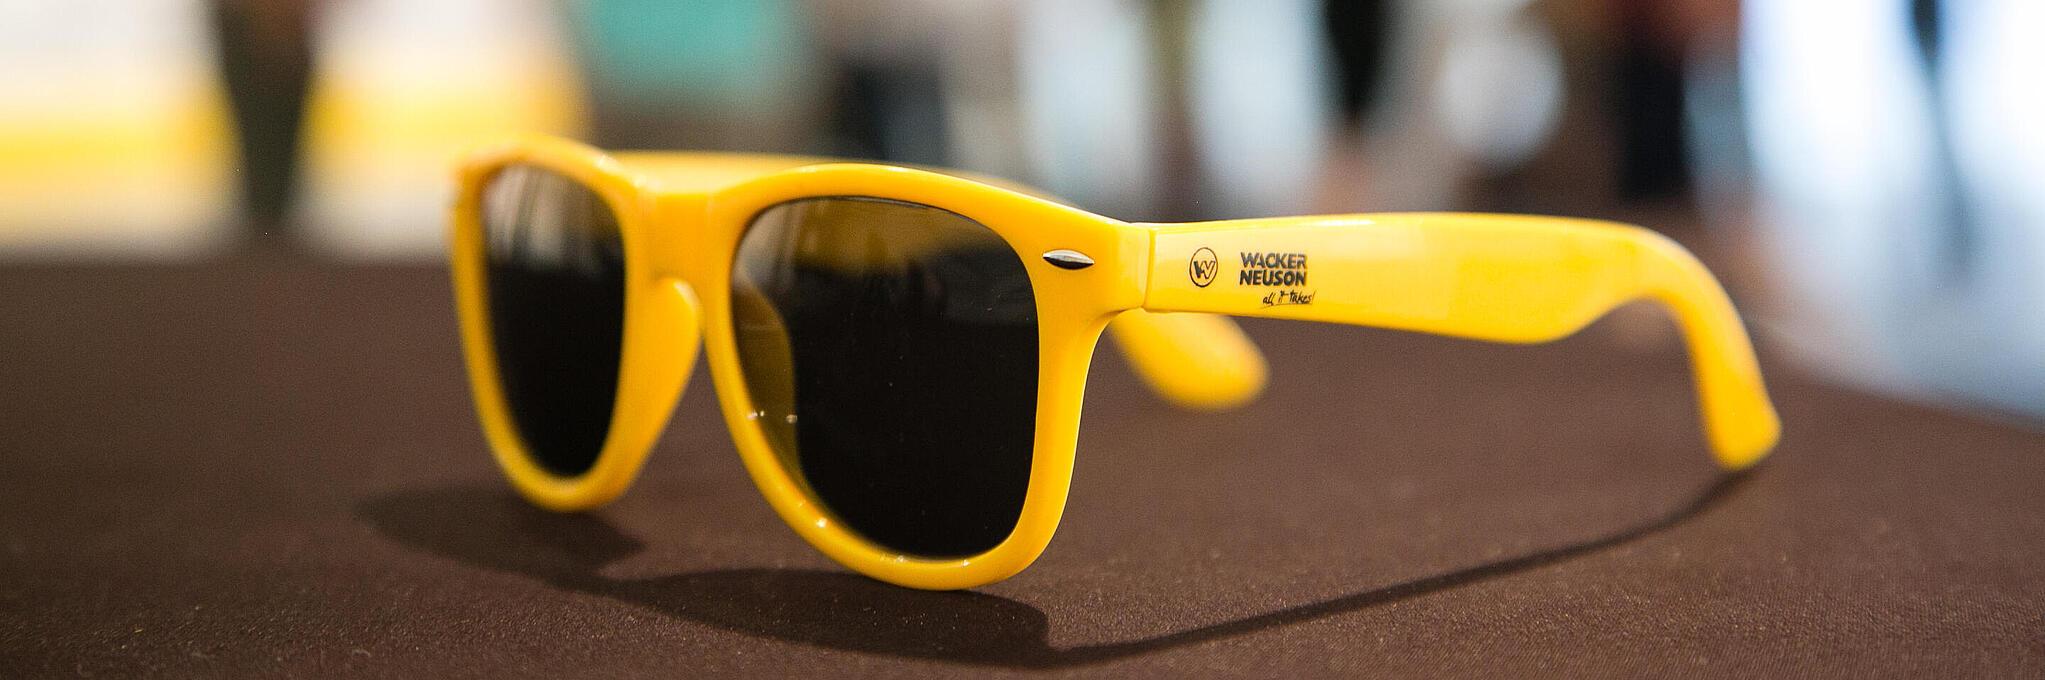 Желтые солнцезащитные очки с логотипом компании Wacker Neuson.